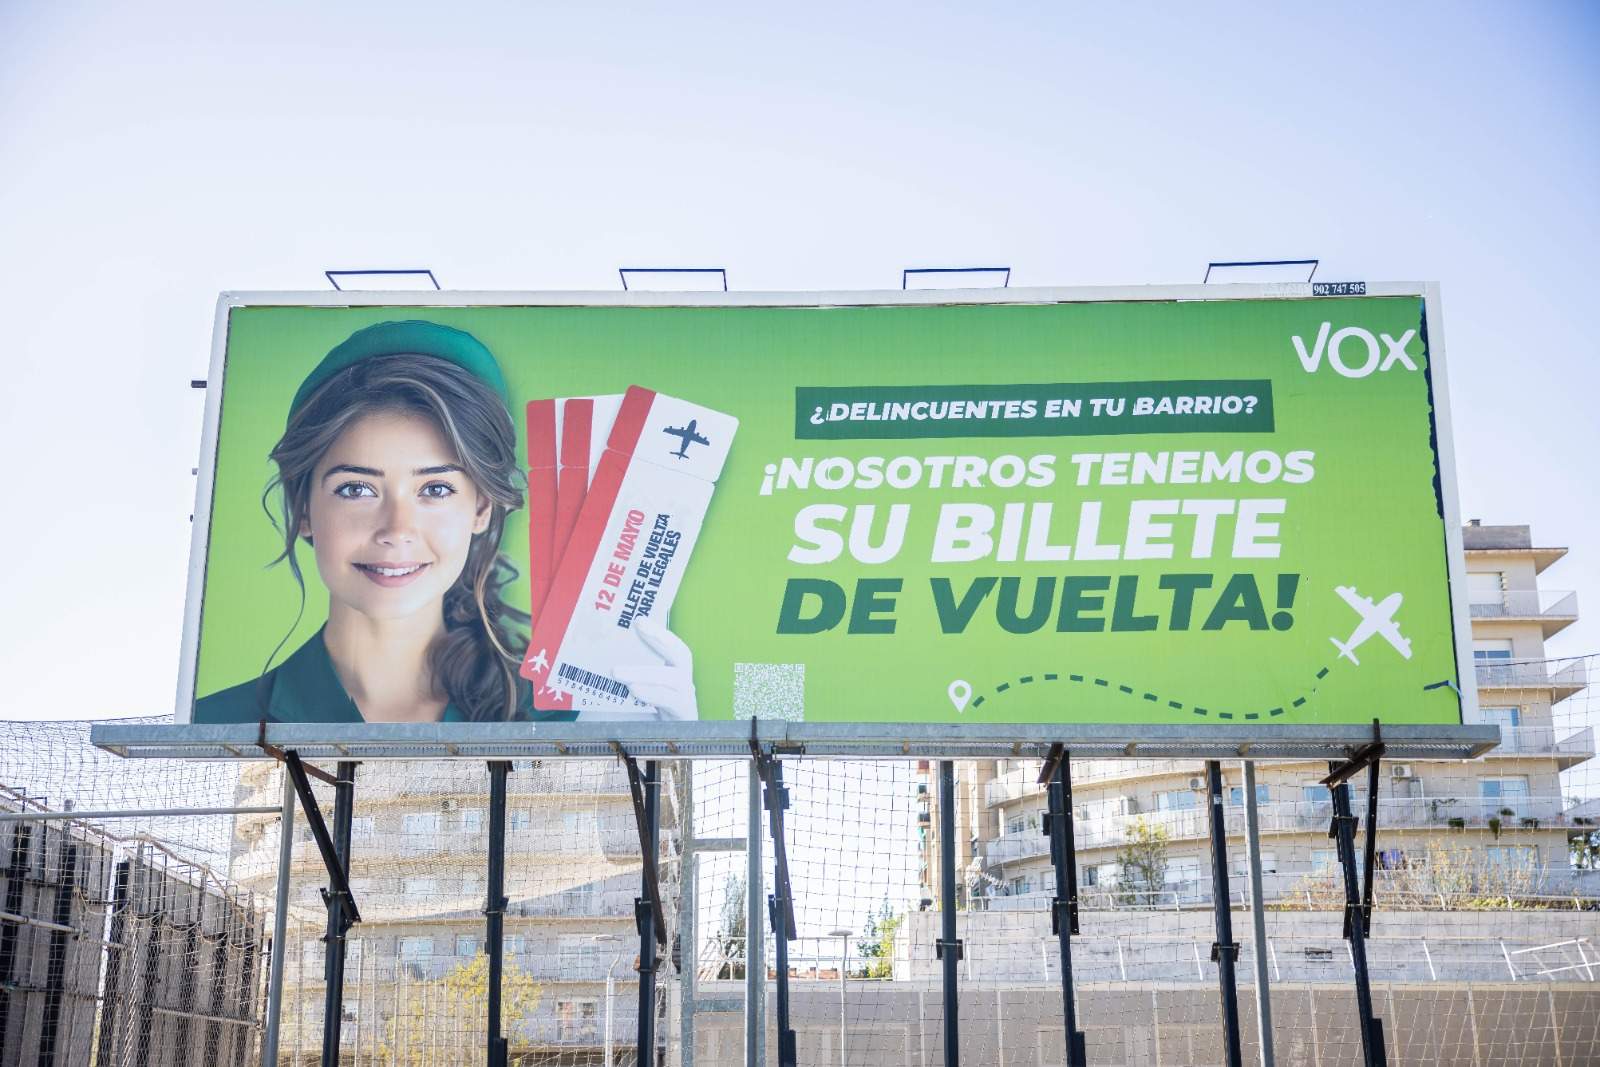 L'agressiva campanya de Vox contra els immigrants pel 12-M: 'Garriga Airlines' per expulsar-los